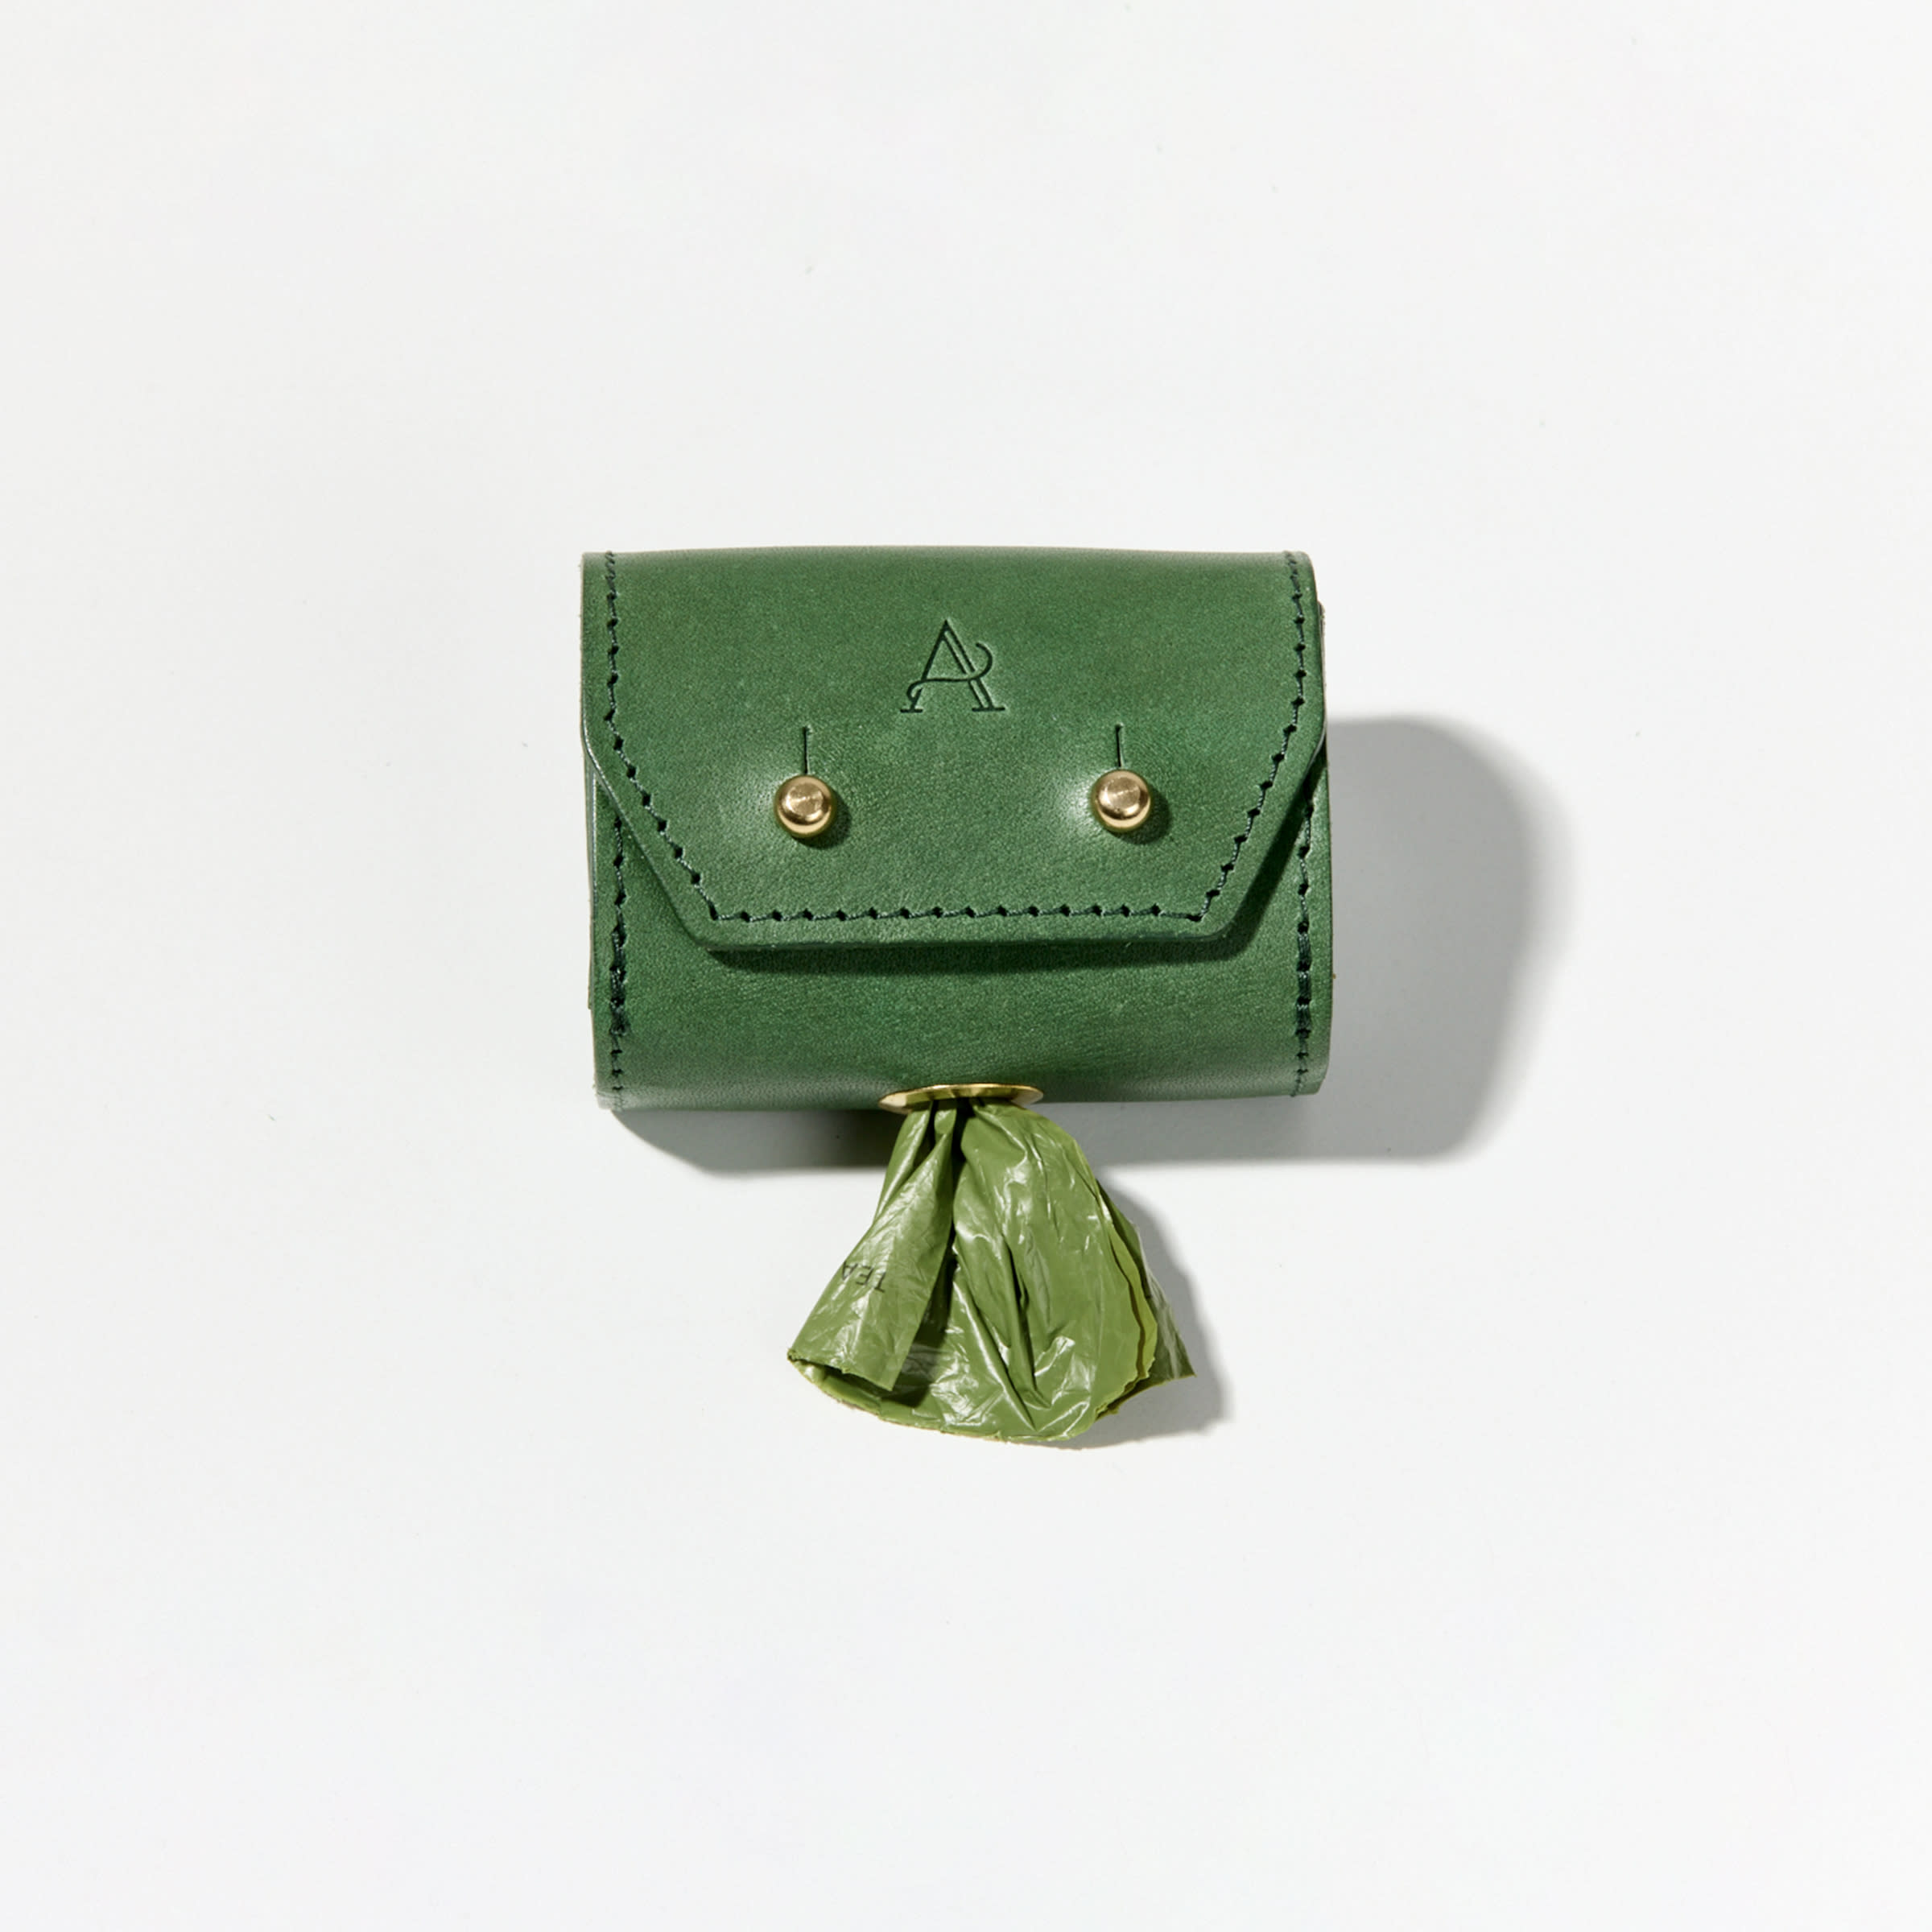 Leather Dog Poo Bag Holder (Green)